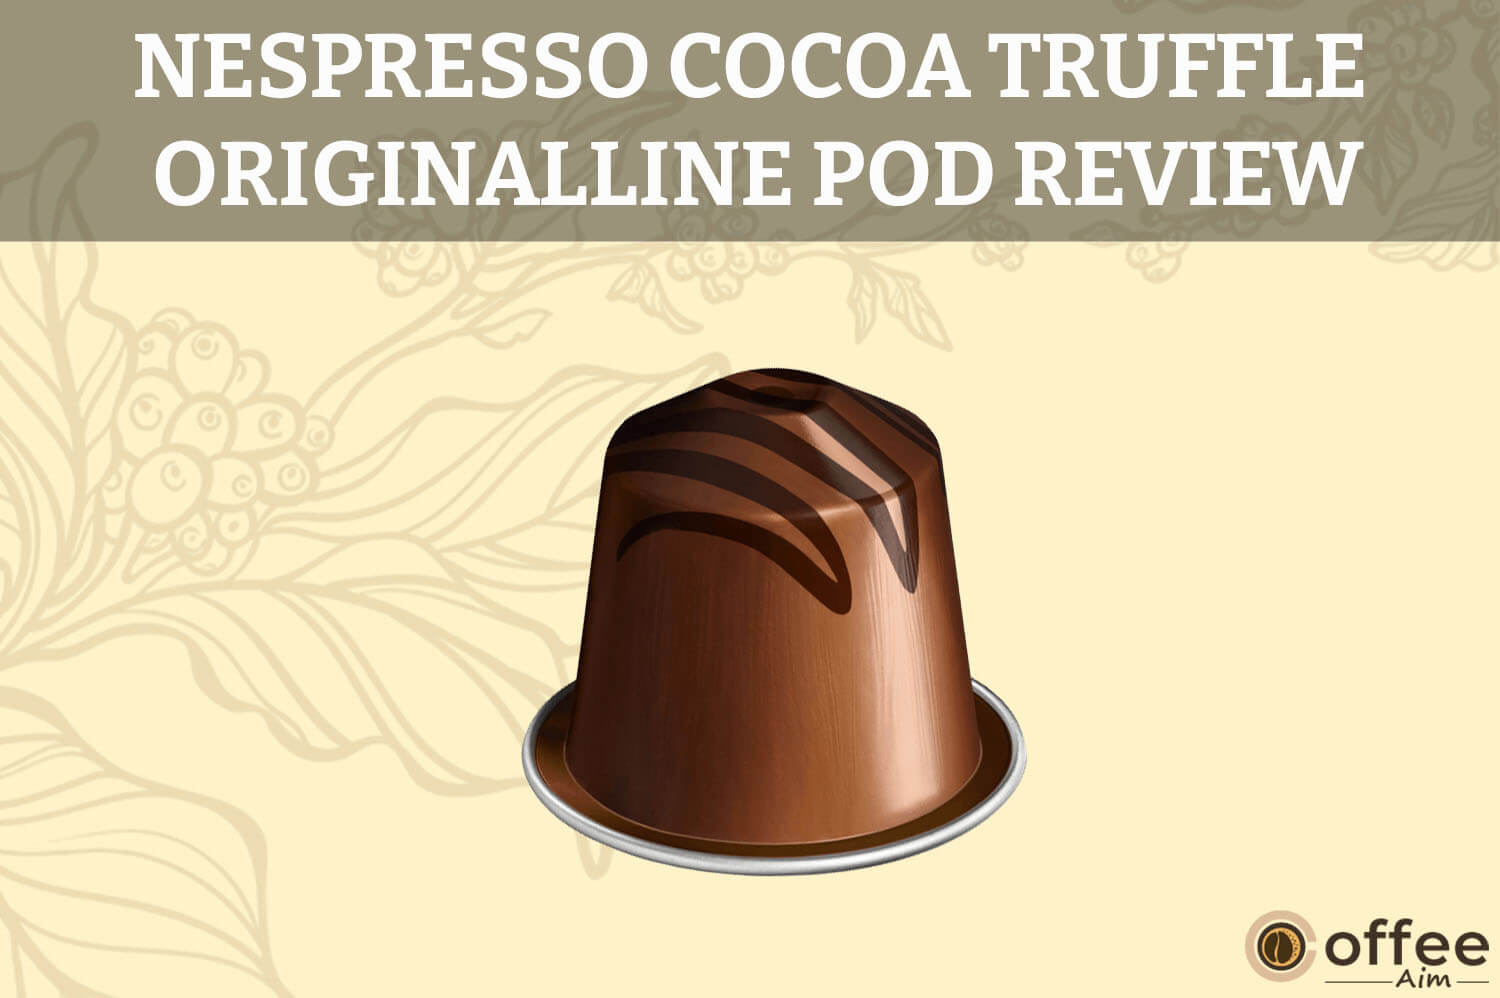 Featured image for the article "Nespresso Cocoa Truffle OriginalLine Pod Review"